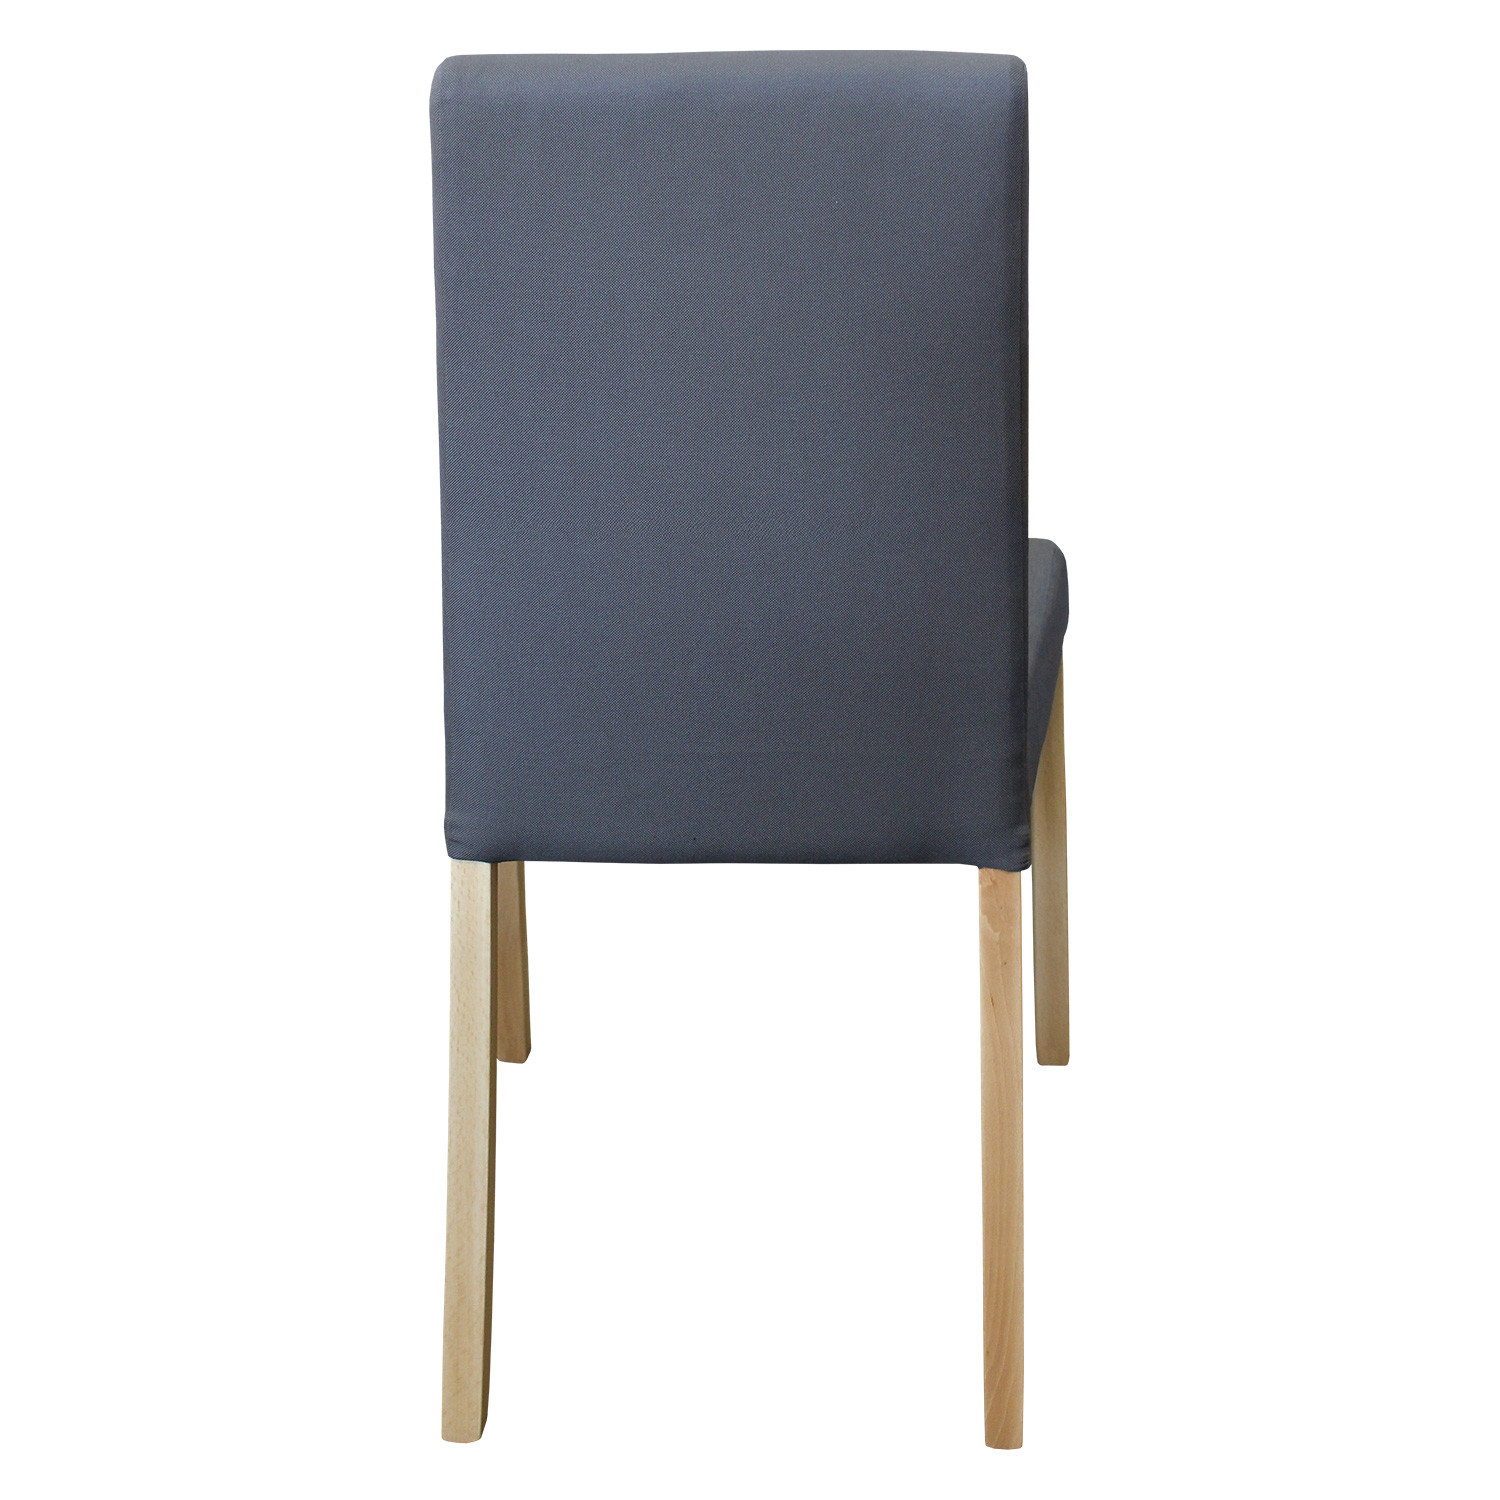 IDEA обеденный стул PRIMA серый/светлые ножки